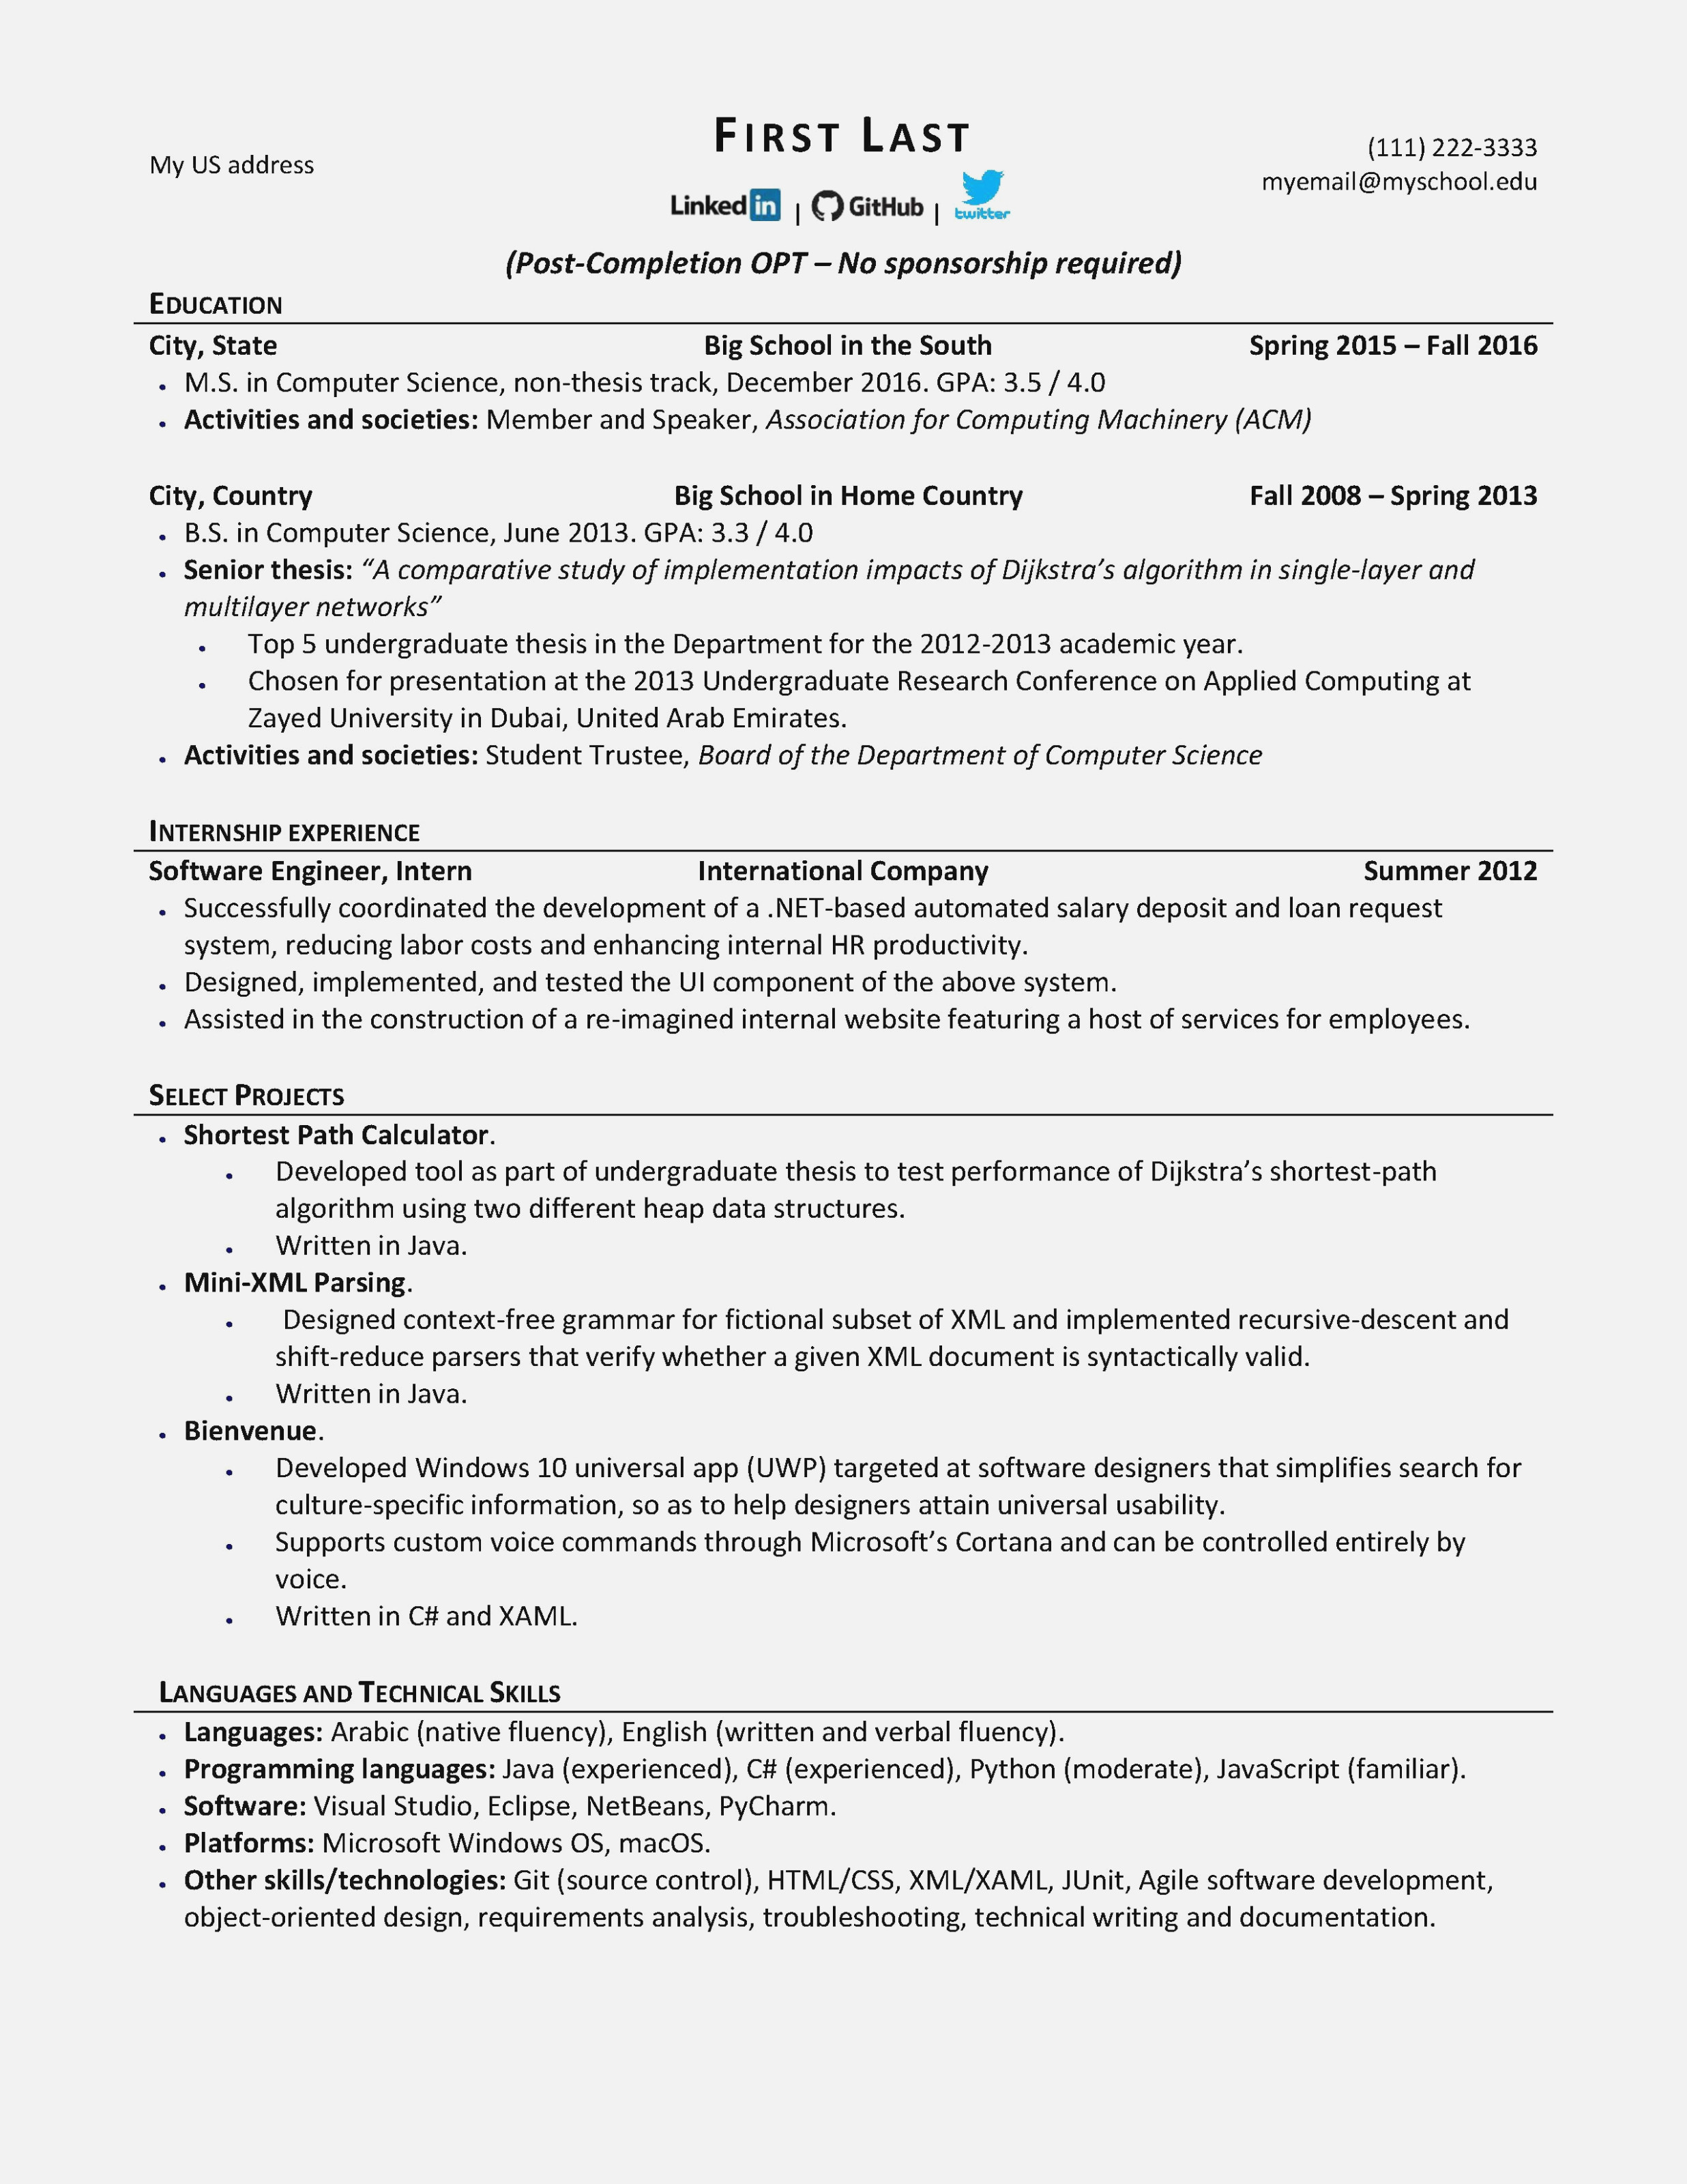 free resume templates download reddit